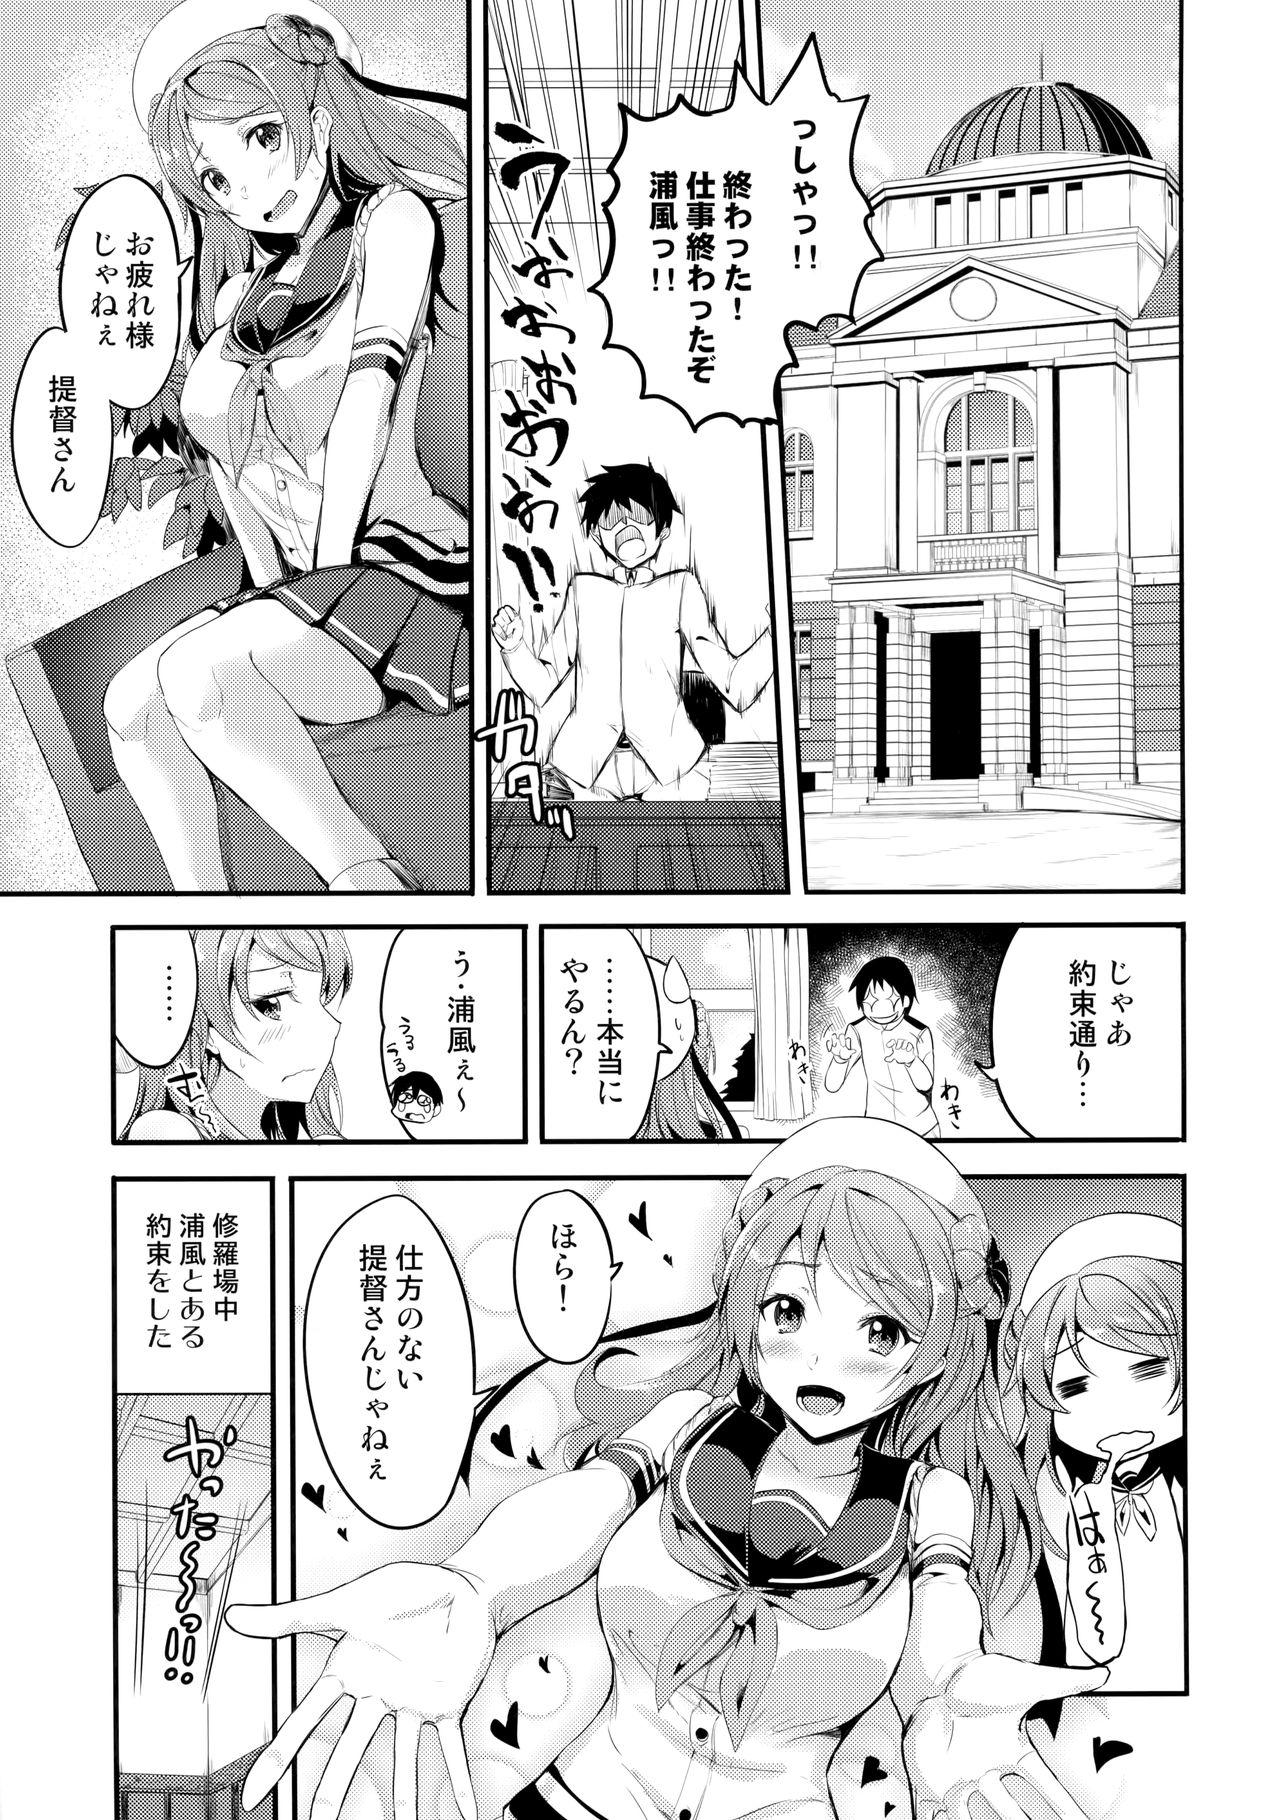 Strap On Amayakashi Urakaze - Kantai collection Anal Licking - Page 2